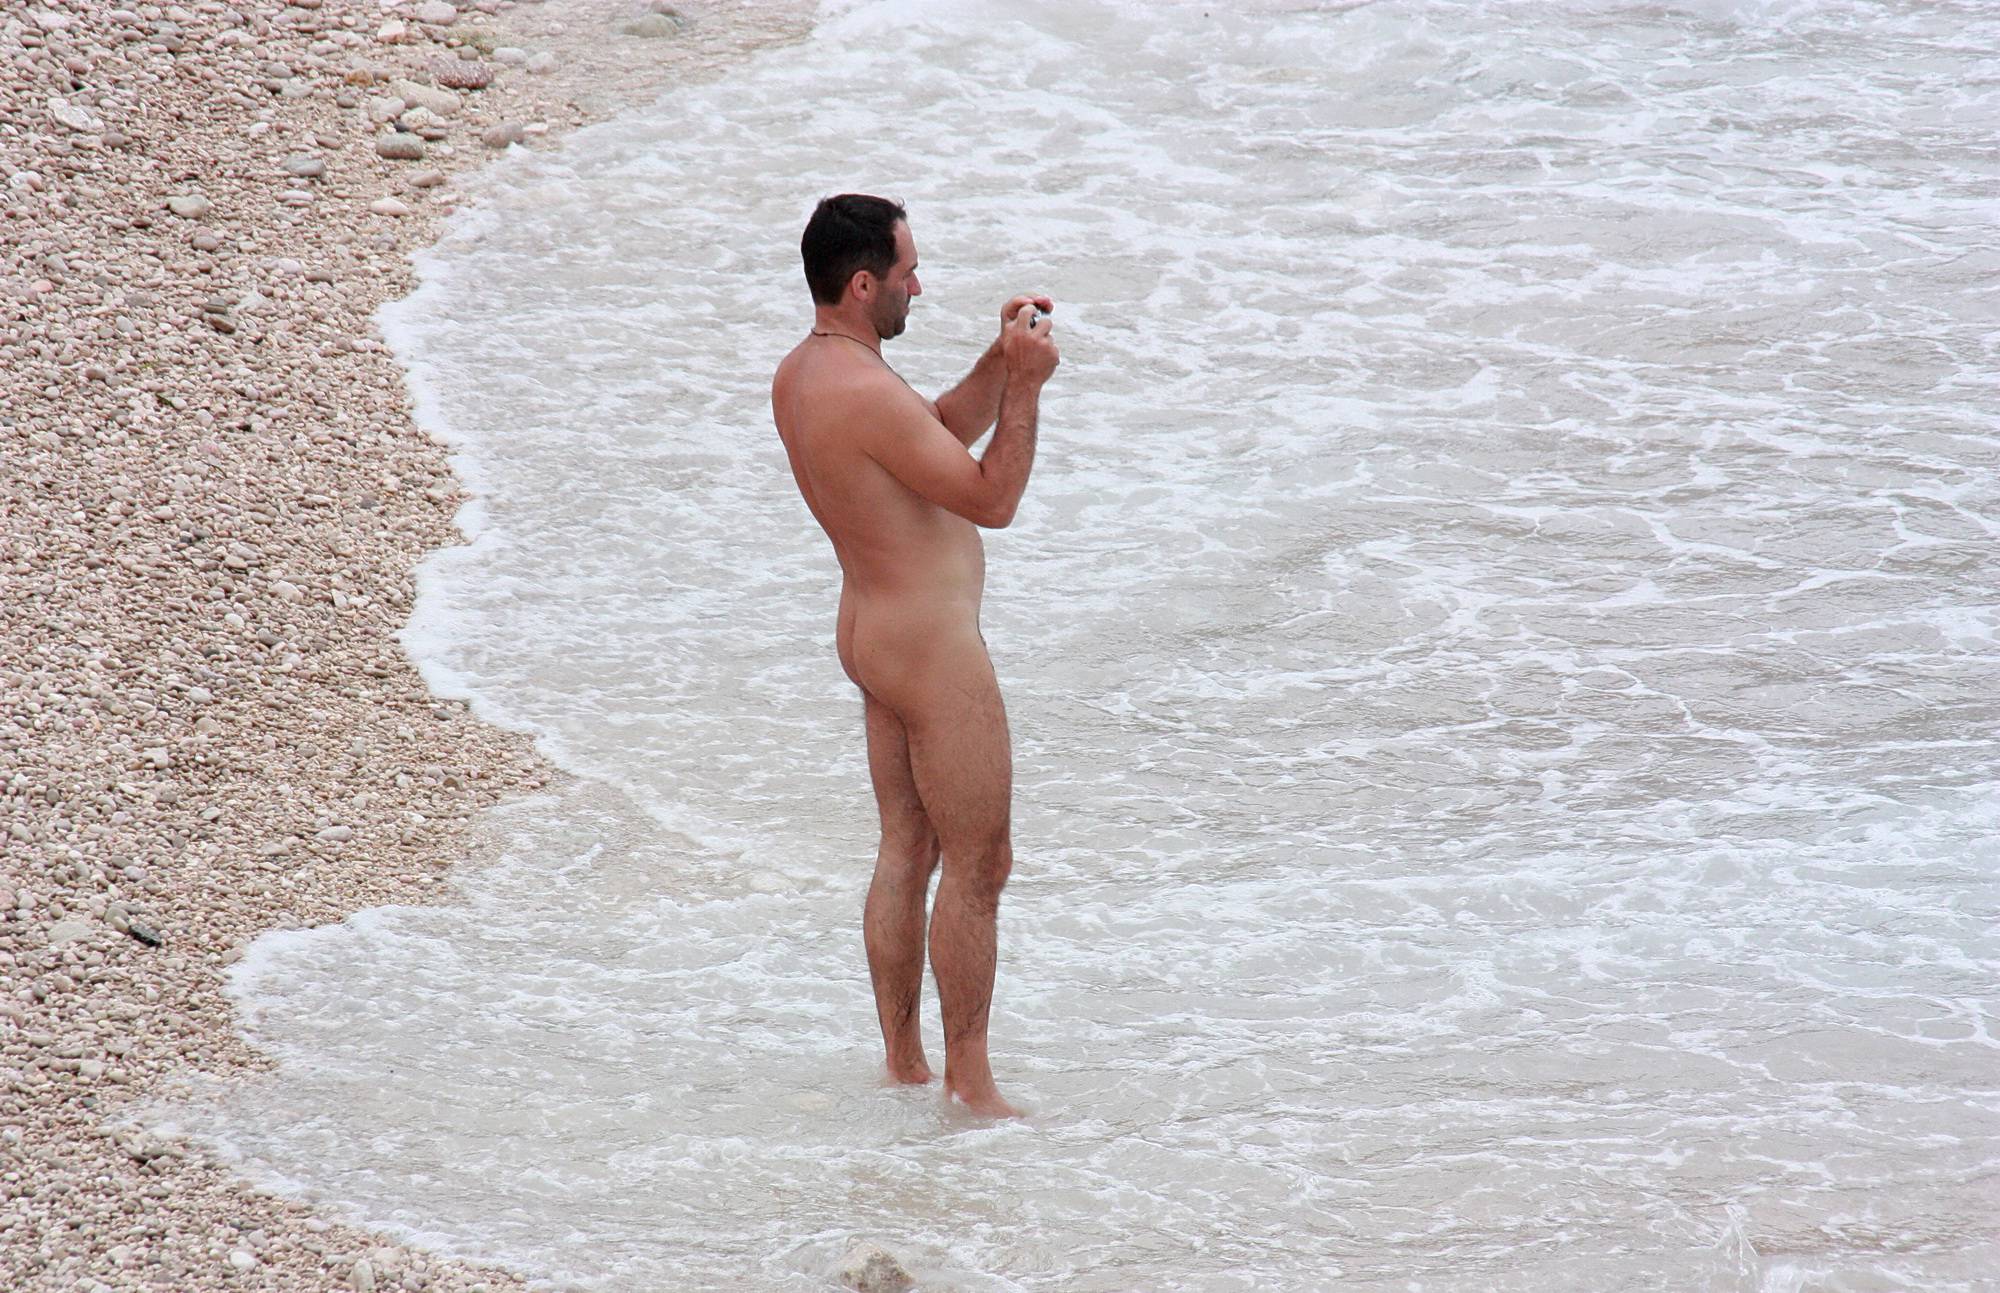 Nudist Photos Wading In Coastal Waves - 1